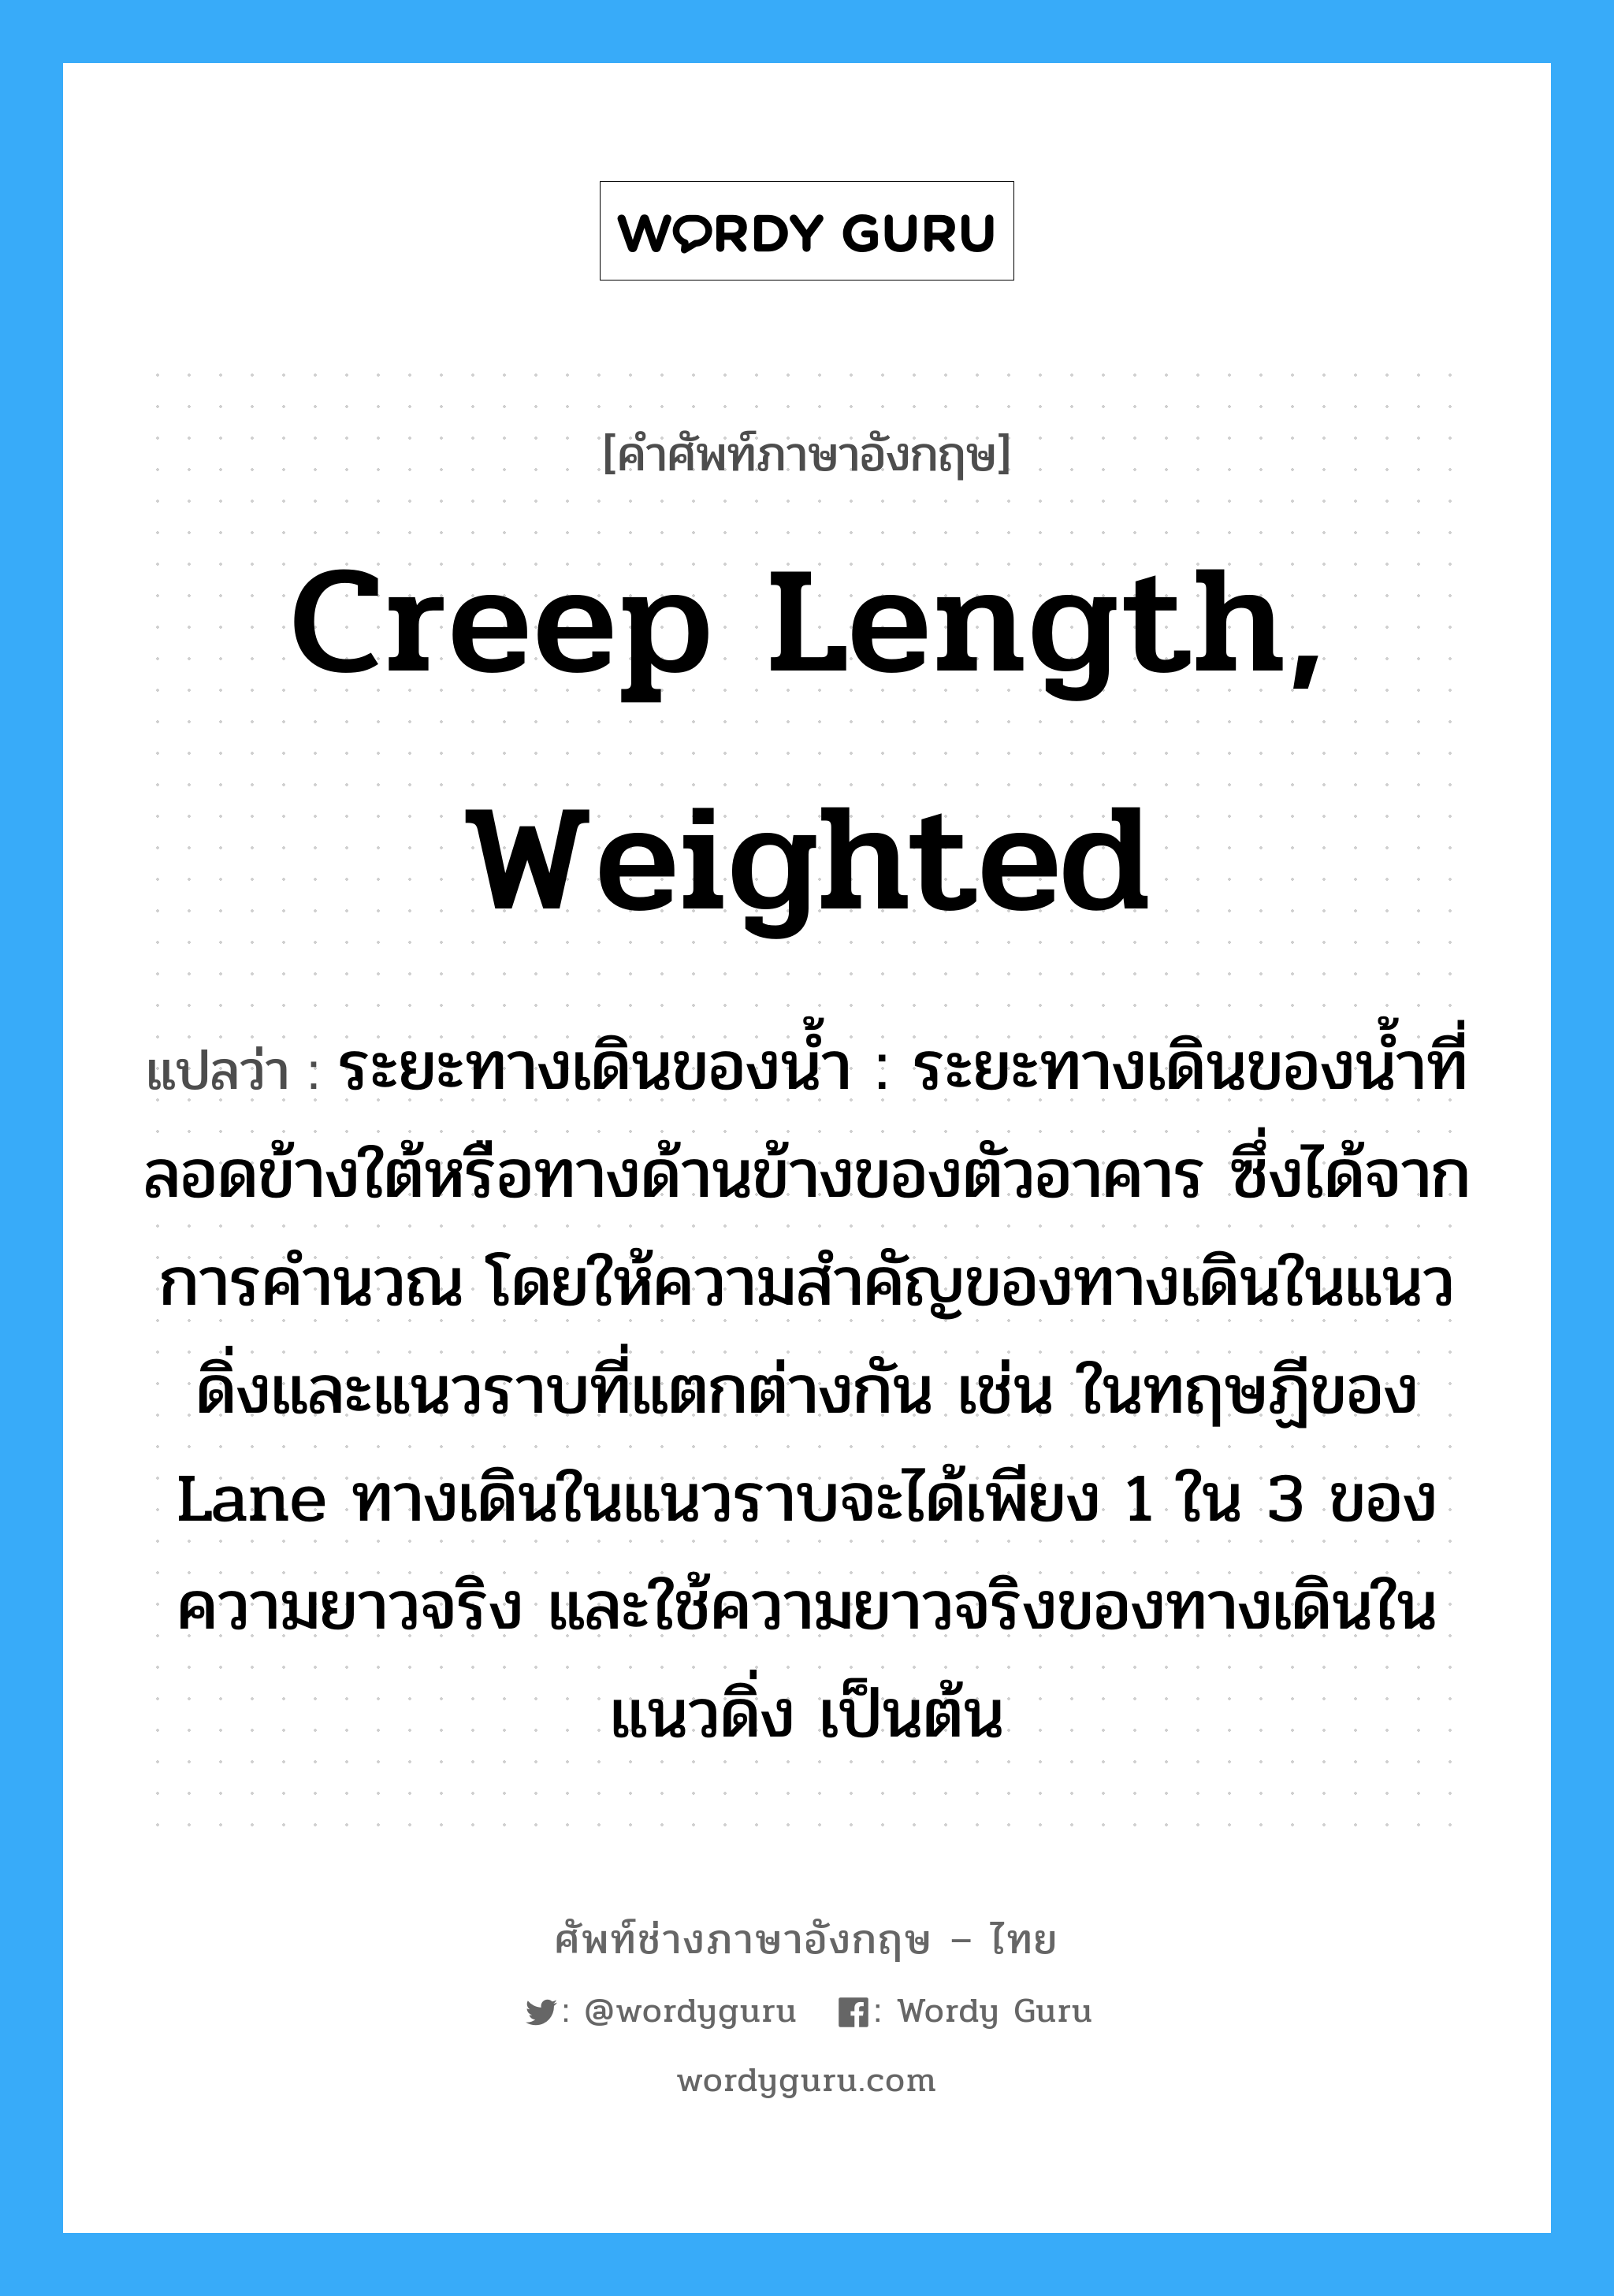 creep length, weighted แปลว่า?, คำศัพท์ช่างภาษาอังกฤษ - ไทย creep length, weighted คำศัพท์ภาษาอังกฤษ creep length, weighted แปลว่า ระยะทางเดินของน้ำ : ระยะทางเดินของน้ำที่ลอดข้างใต้หรือทางด้านข้างของตัวอาคาร ซึ่งได้จากการคำนวณ โดยให้ความสำคัญของทางเดินในแนวดิ่งและแนวราบที่แตกต่างกัน เช่น ในทฤษฏีของ Lane ทางเดินในแนวราบจะได้เพียง 1 ใน 3 ของความยาวจริง และใช้ความยาวจริงของทางเดินในแนวดิ่ง เป็นต้น